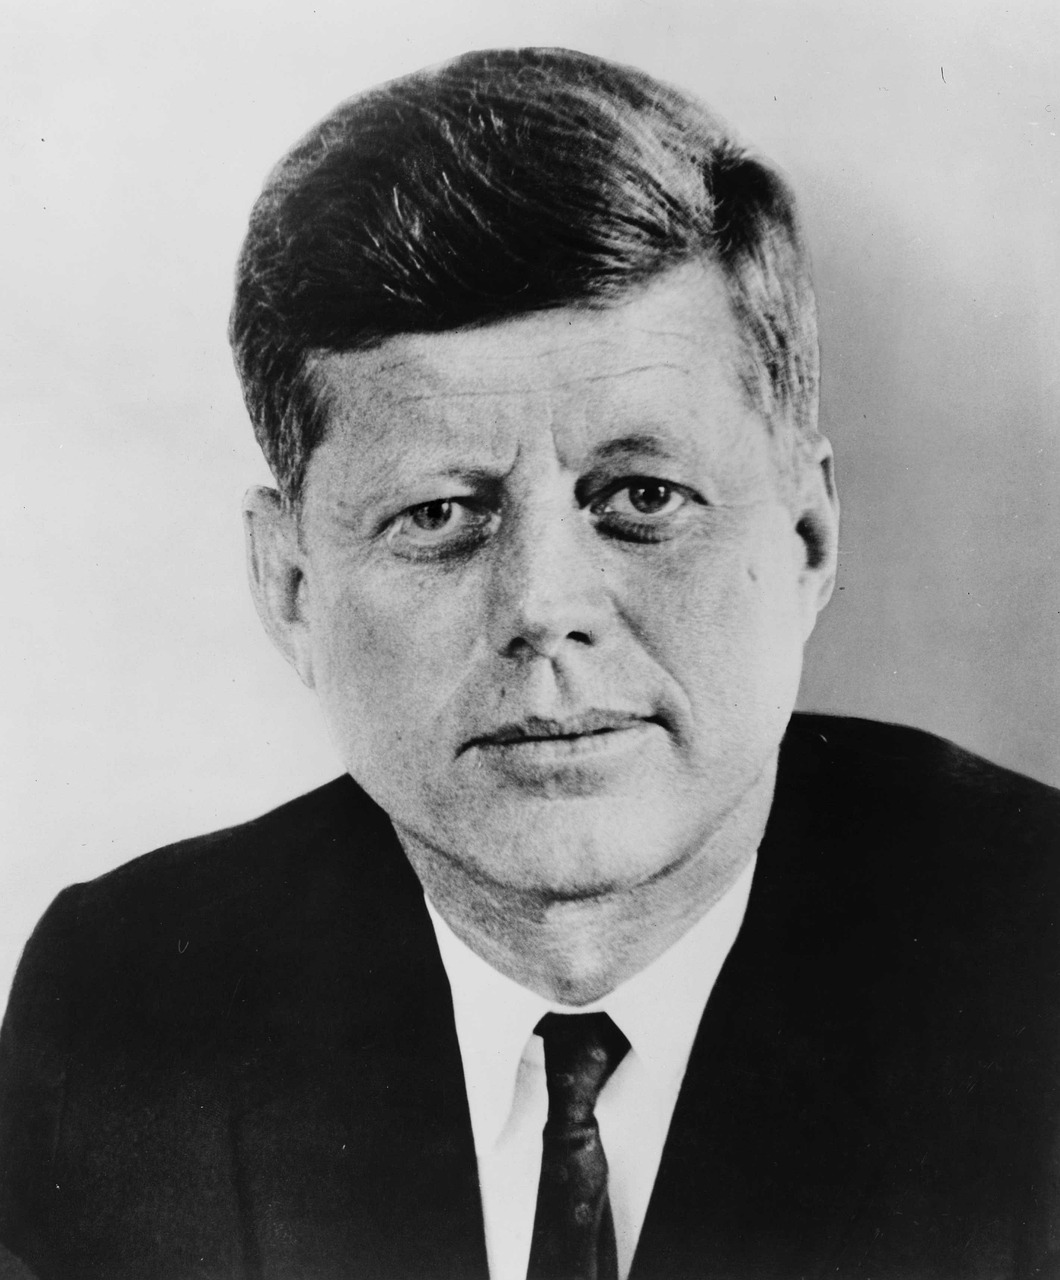 1962 con il Proclama 3447 dell’amministrazione Kennedy parte “El bloqueo” contro Cuba. Sono passati 62 anni ma nulla è cambiato.